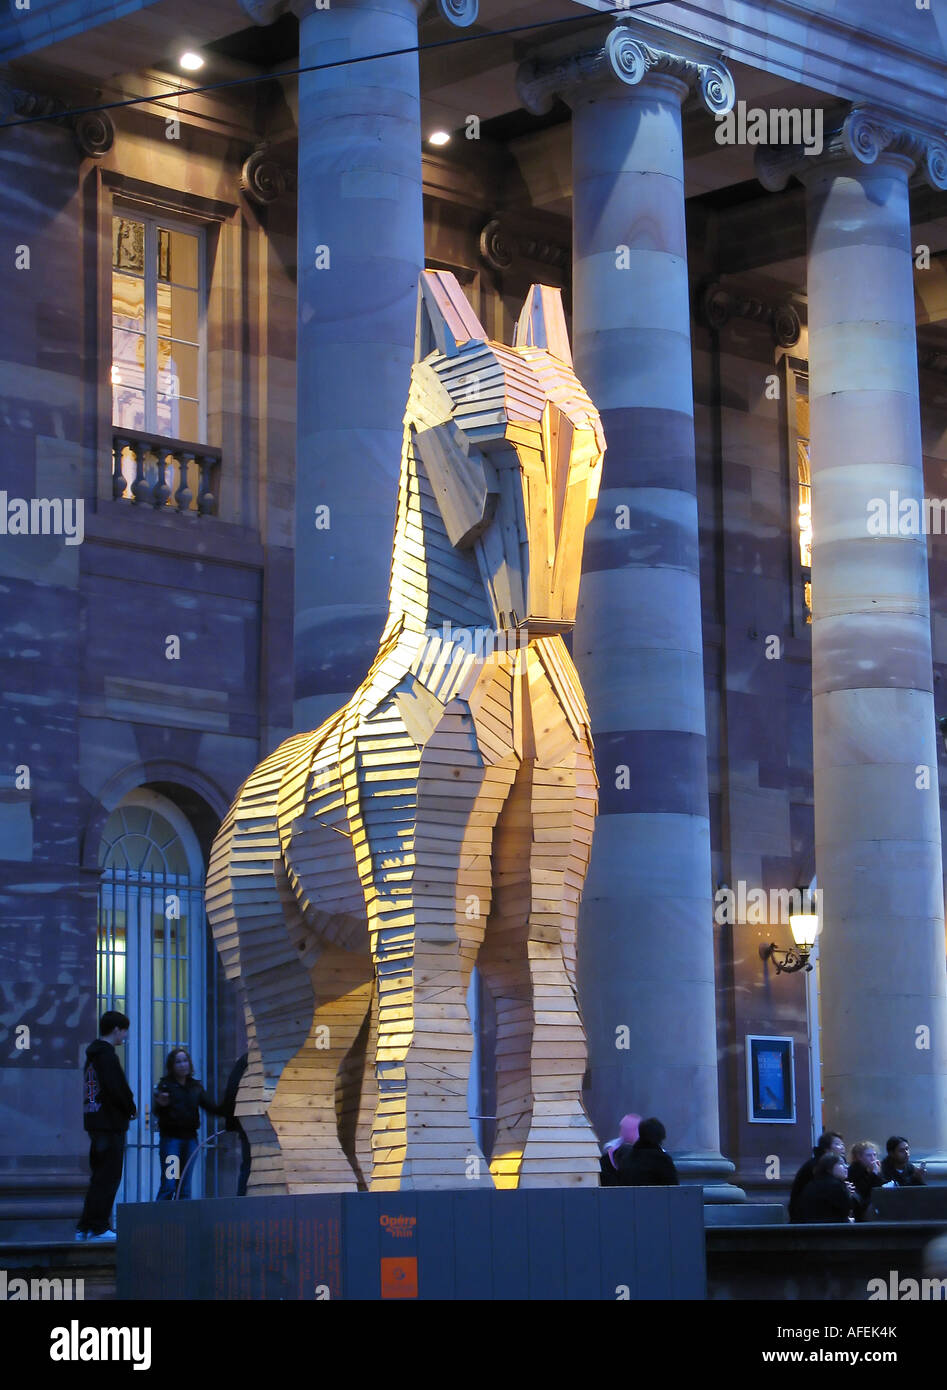 Cheval de Troie en bois par Philippe Miesch en face de l'Opera House de nuit, Strasbourg, Alsace, France Banque D'Images